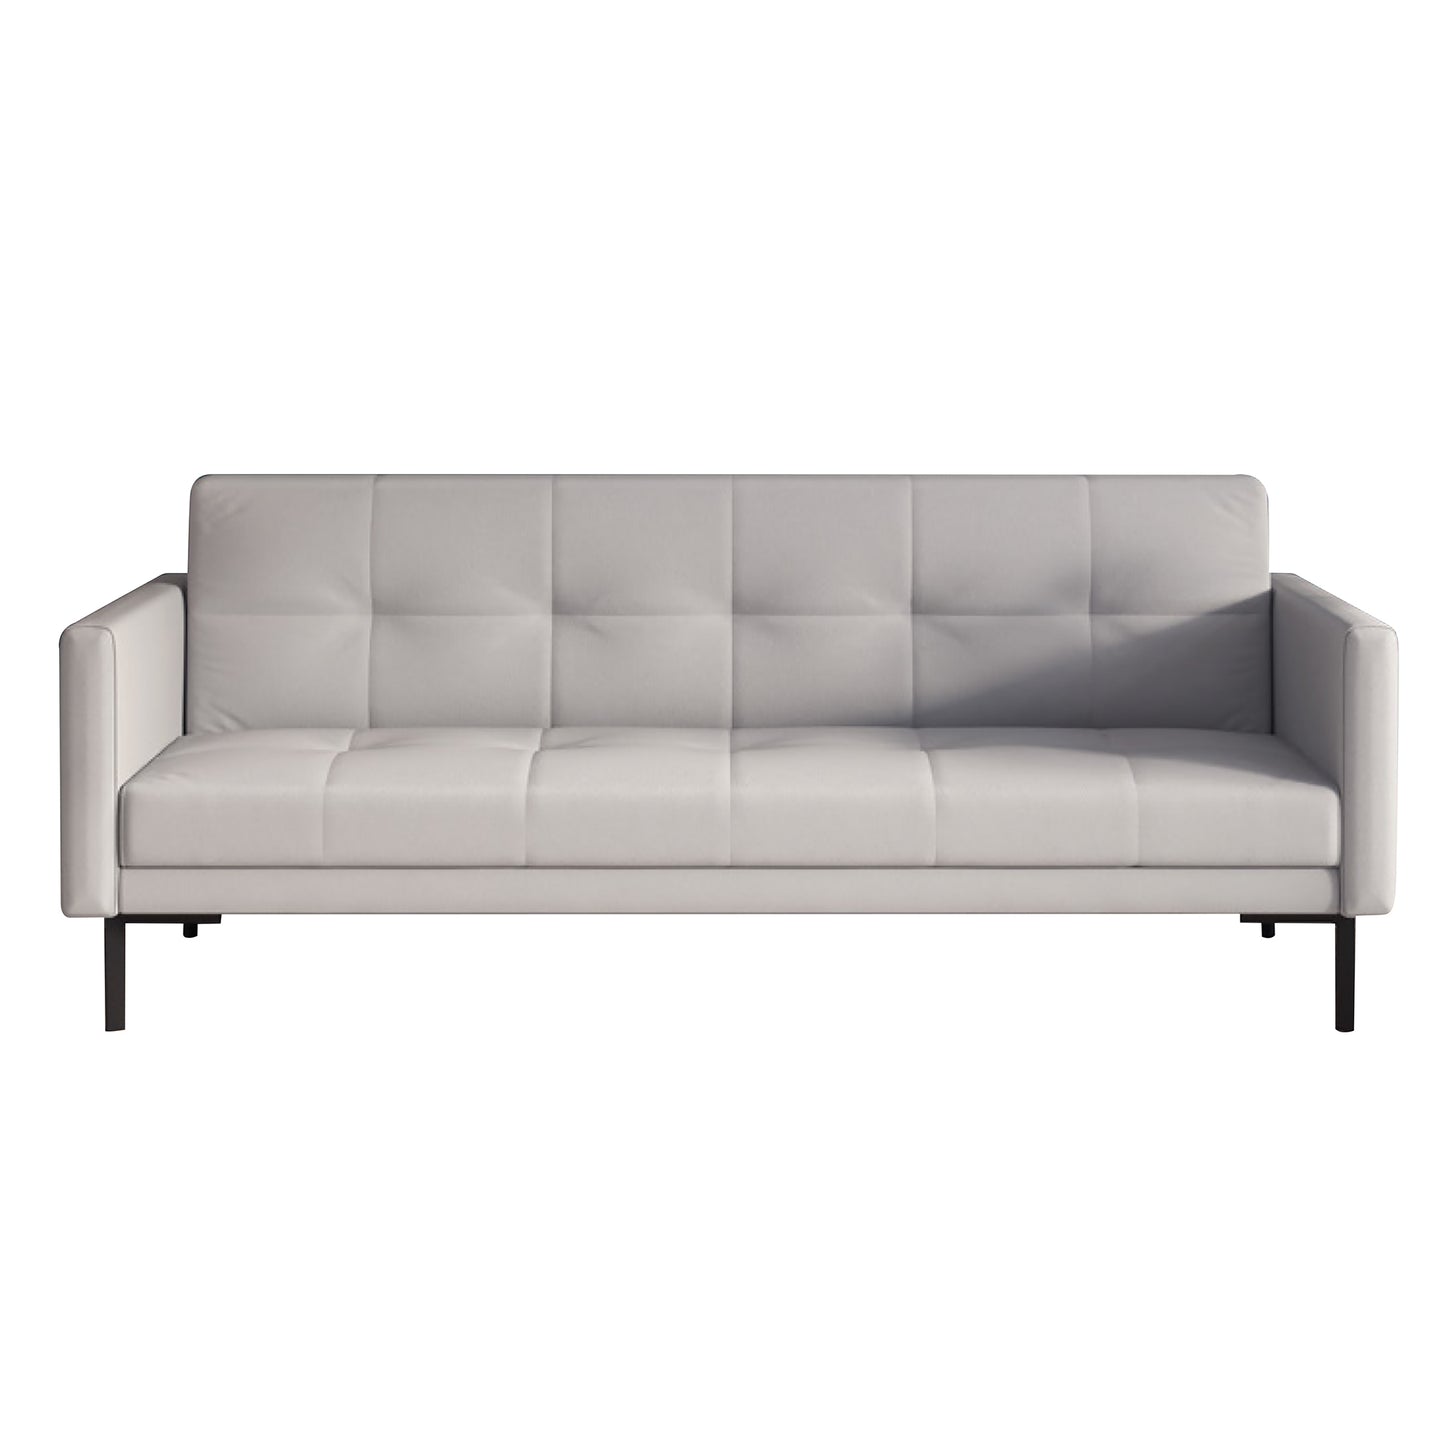 Deluxe series sofa 02831